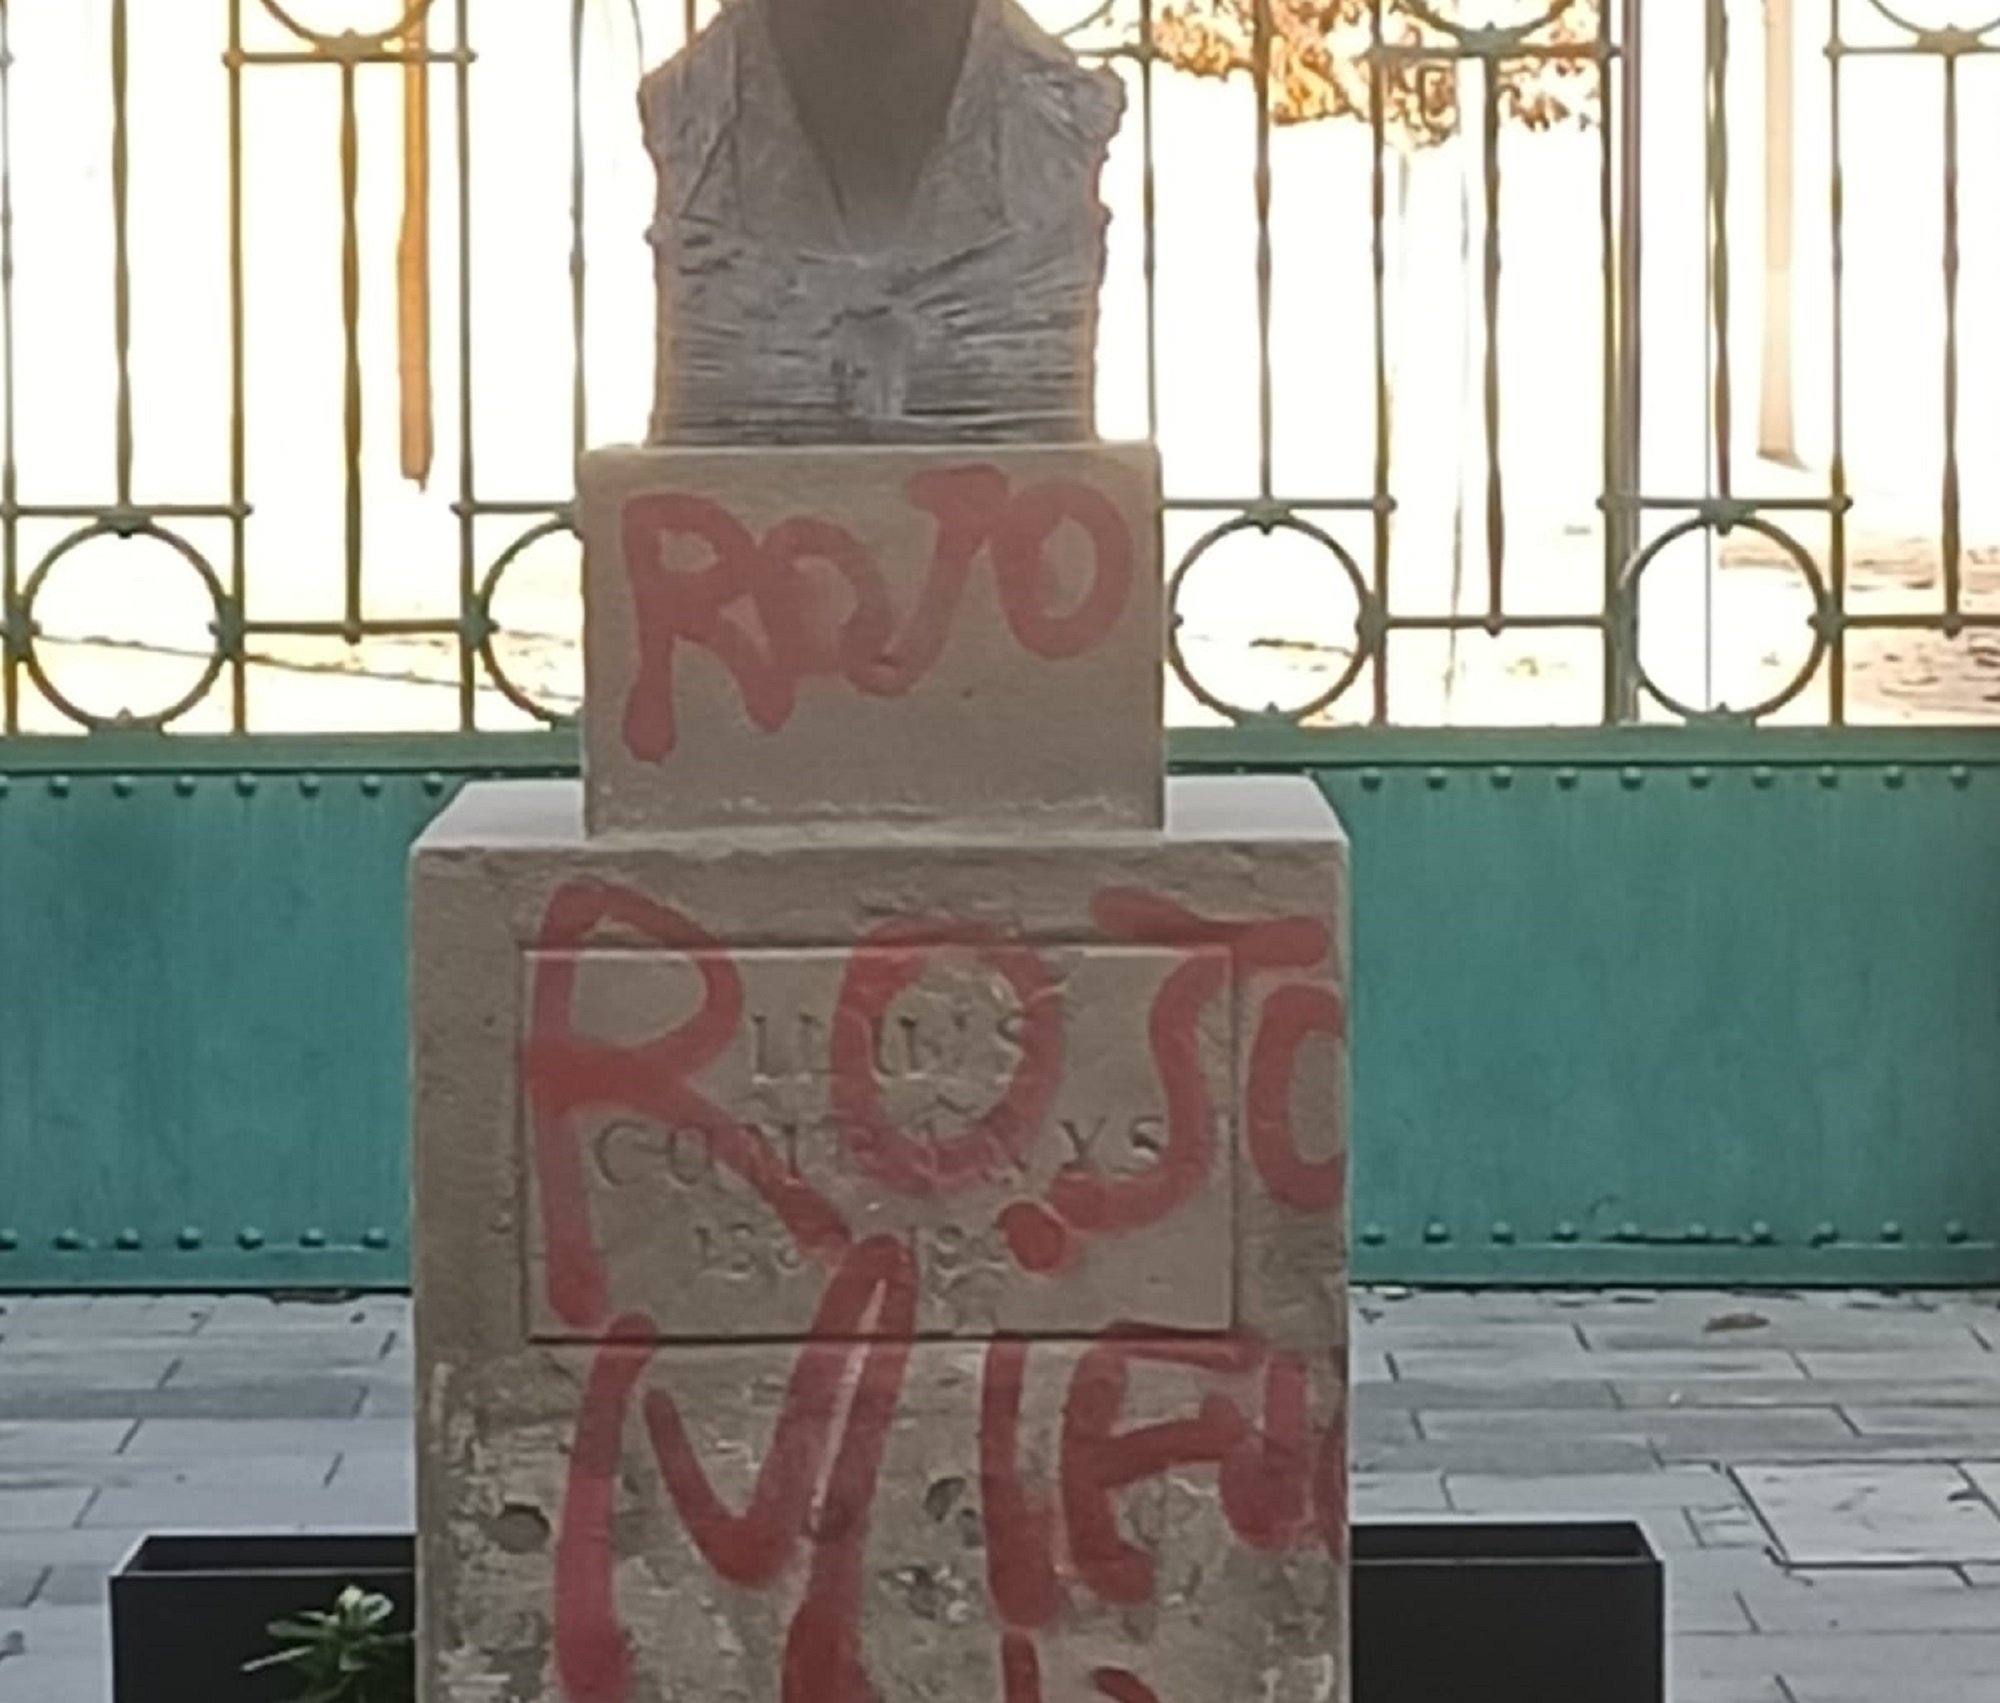 Atac feixista al monument de Lluís Companys a Lleida